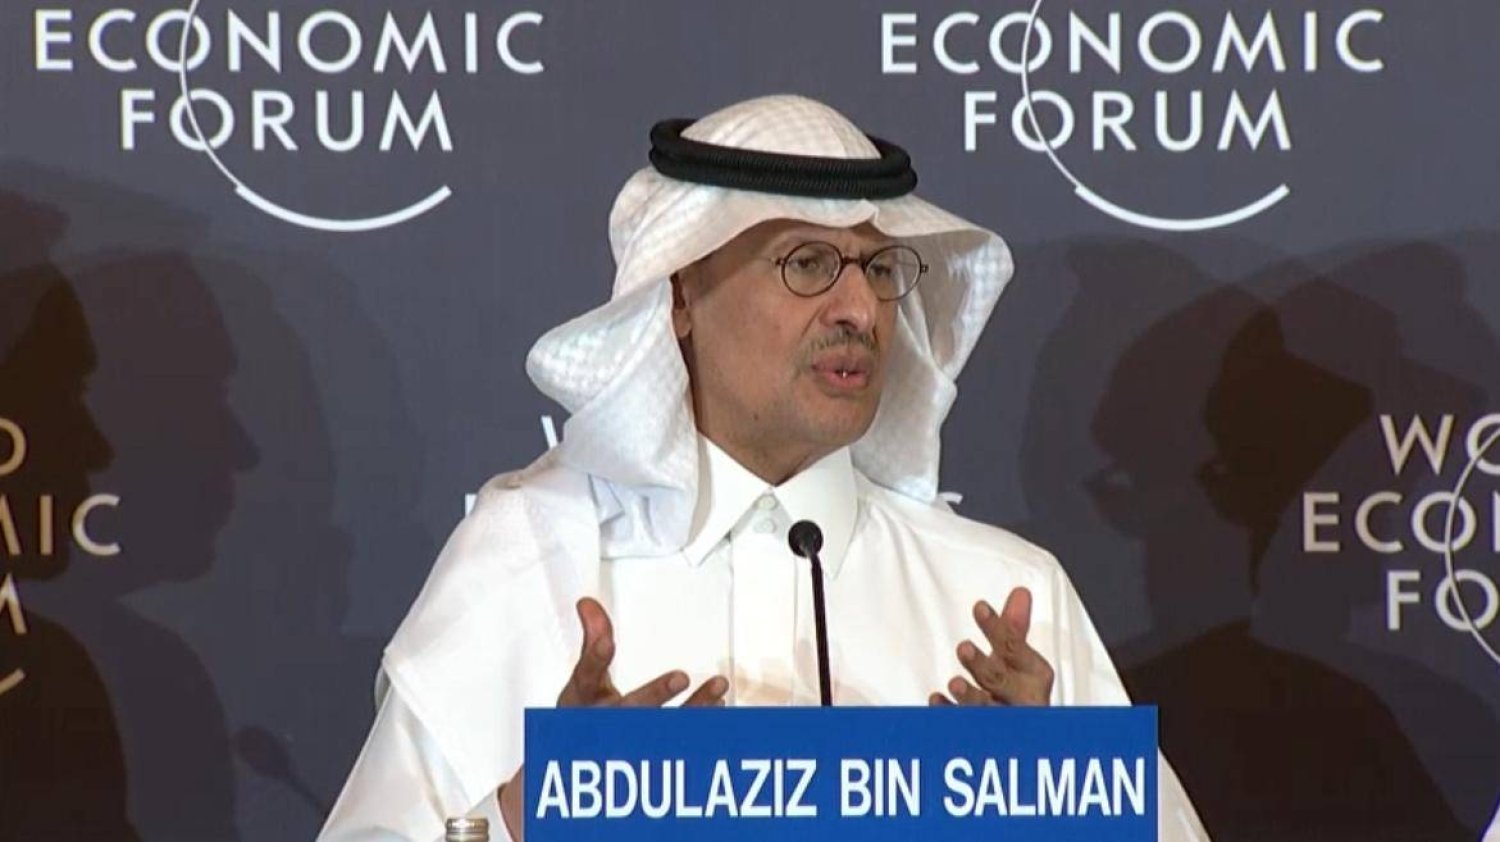 وزير الطاقة السعودي متحدثًا للحضور ضمن فعاليات الاجتماع الخاص للمنتدى الاقتصادي العالمي بالرياض (الشرق الأوسط)